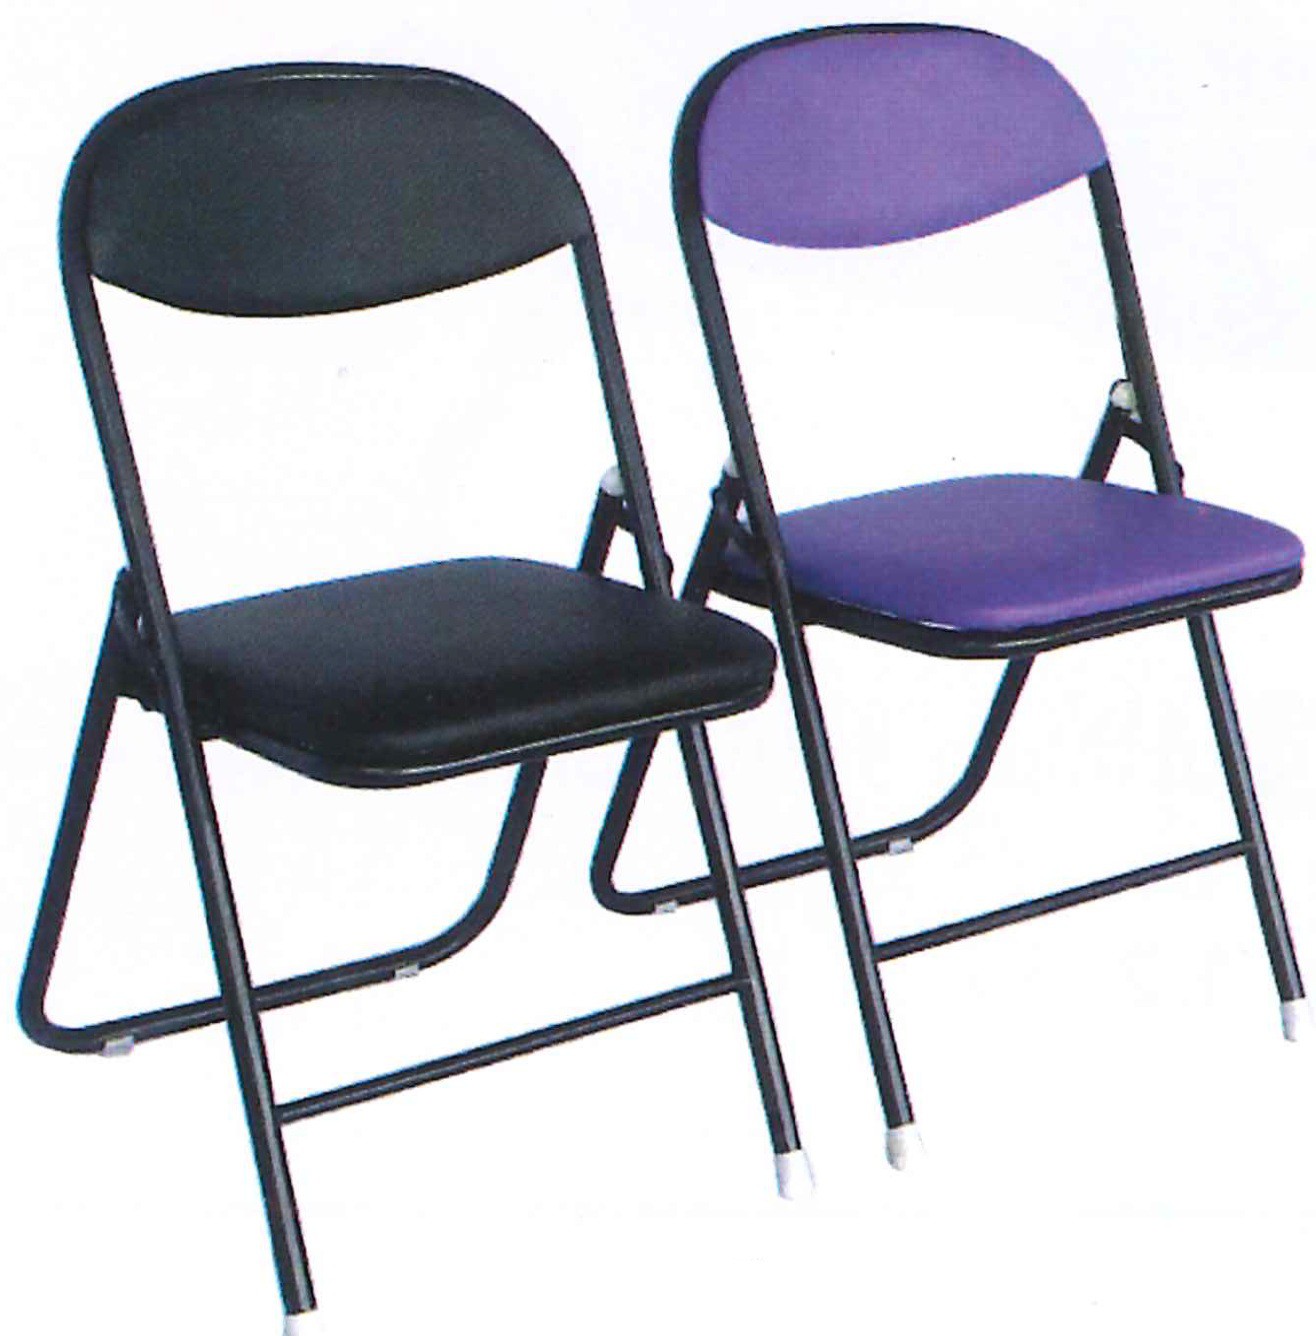 DG/S07,เก้าอี้รับรอง,เก้าอี้รับแขก,เก้าอี้รับรอง,เก้าอี้เบาะ,เก้าอี้นุ่ม,เก้าอี้พักผ่อน,เก้า,chair